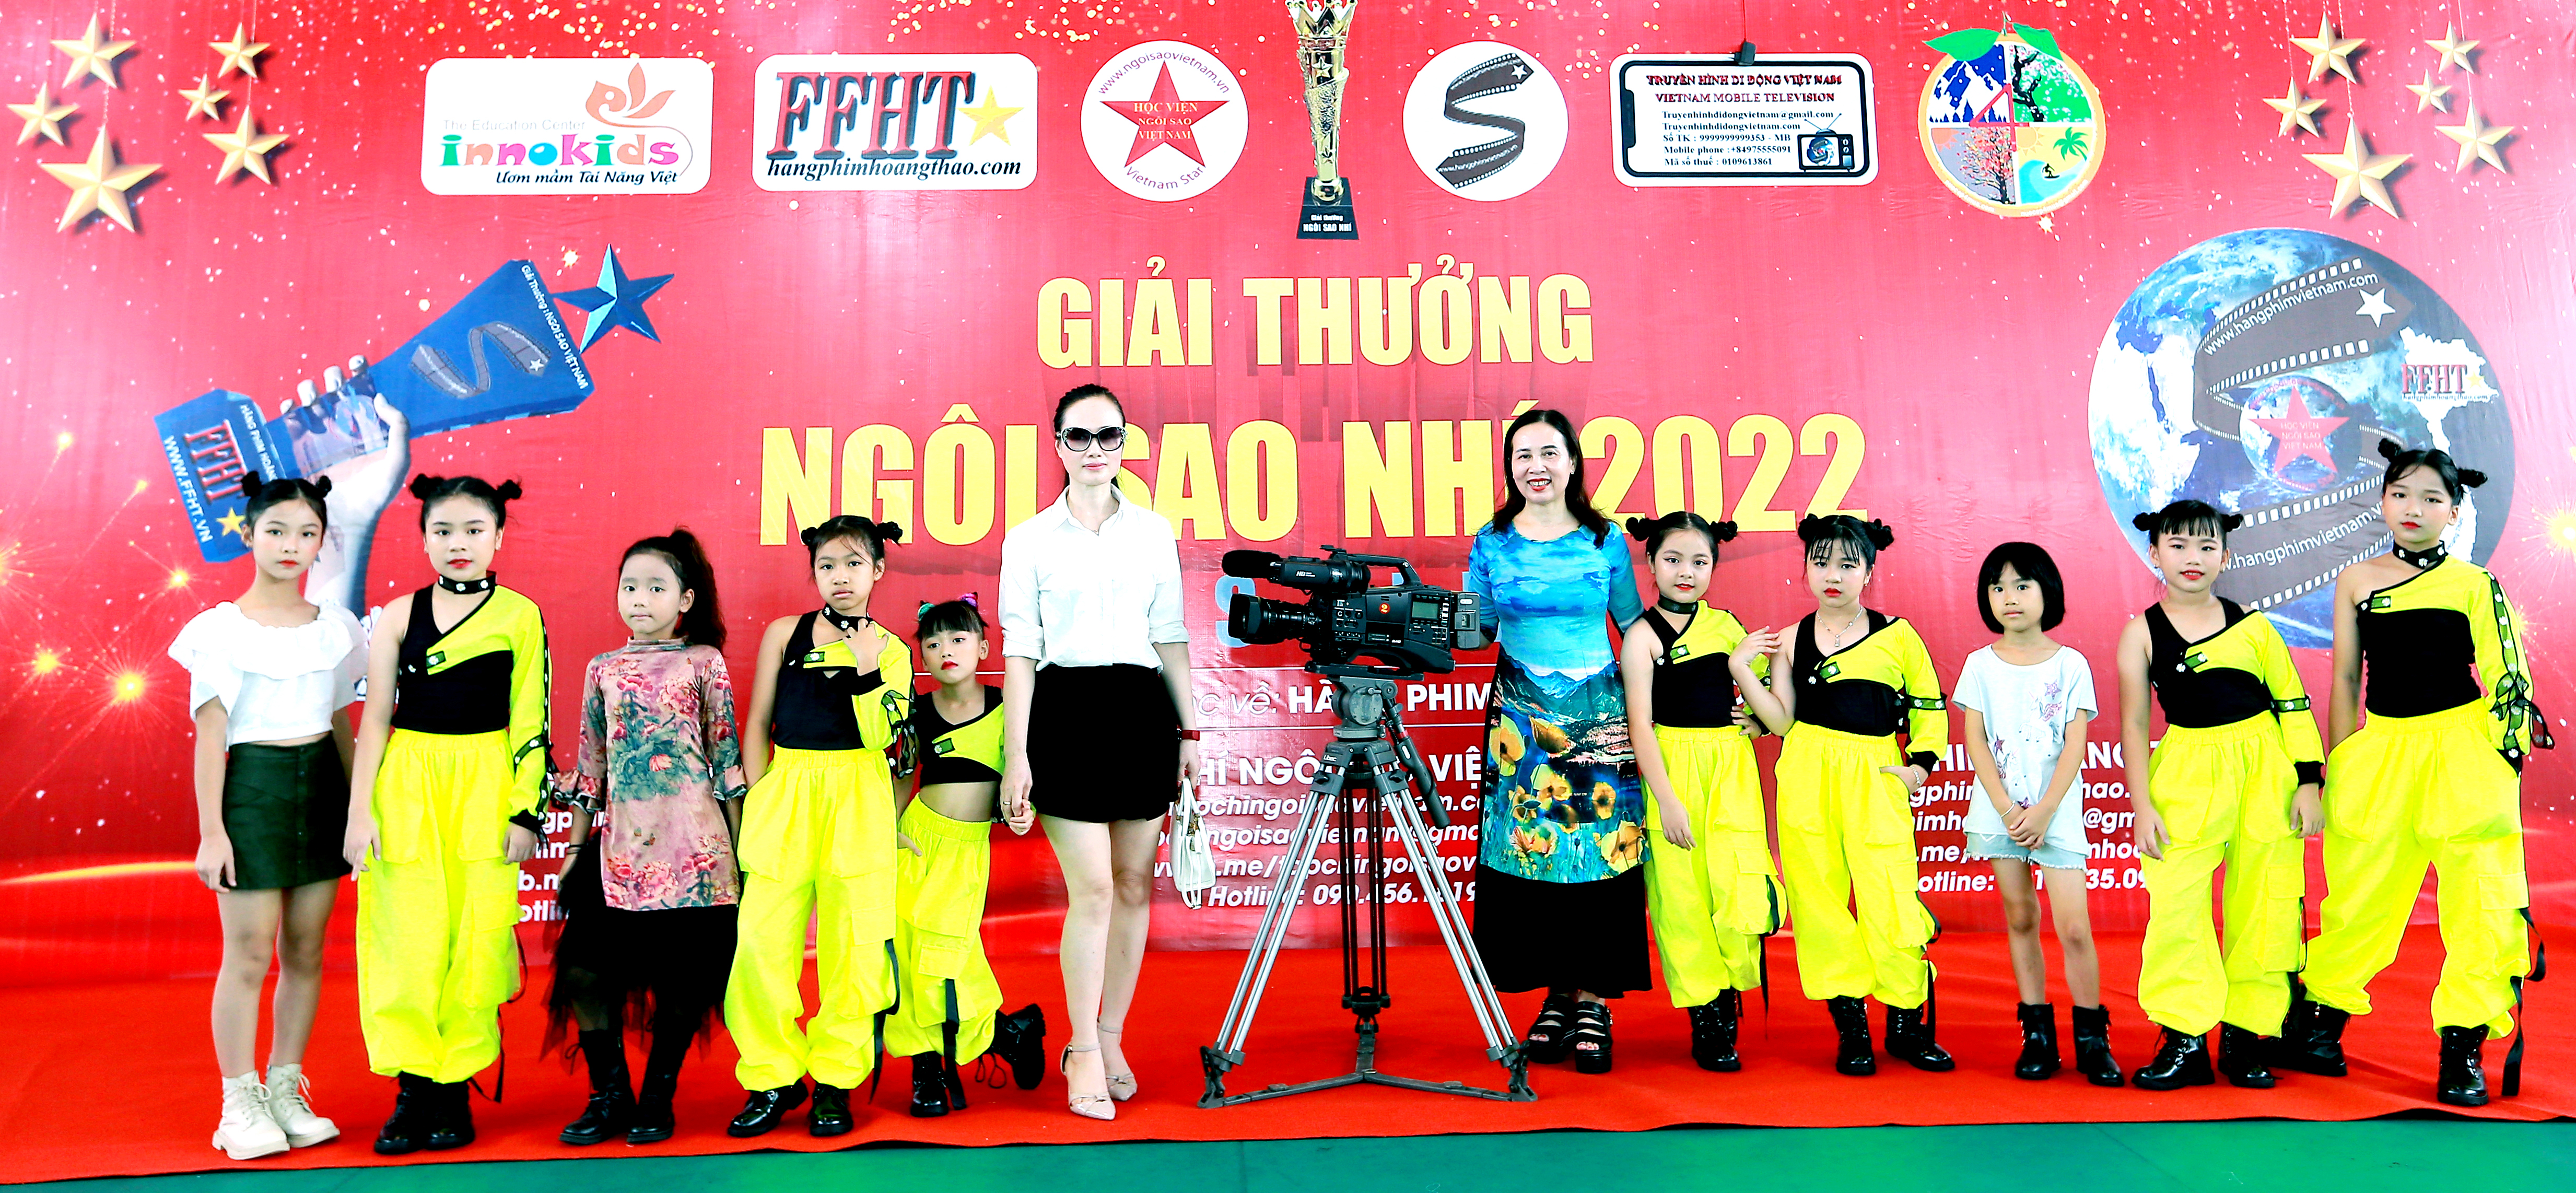 Hãng Phim Hoàng Thảo khởi động 2 Cuộc thi “Người mẫu nhí Việt Nam-Model Kid Vietnam” và Giải thưởng “Ngôi sao nhí” năm 2022 